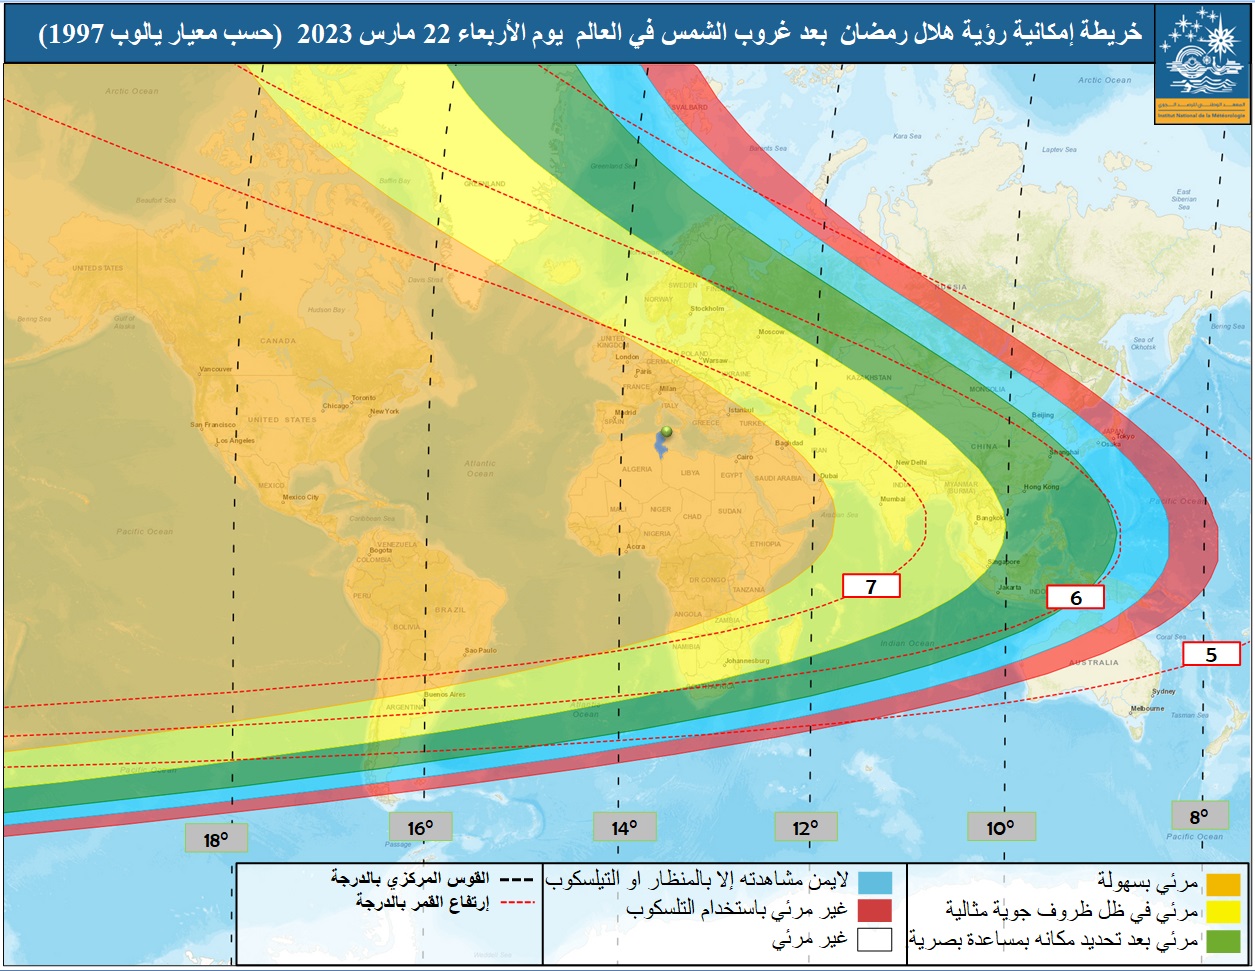 خريطة مناطق إمكانية رؤية هلال رمضان  حسب معيار يالوب 1997 